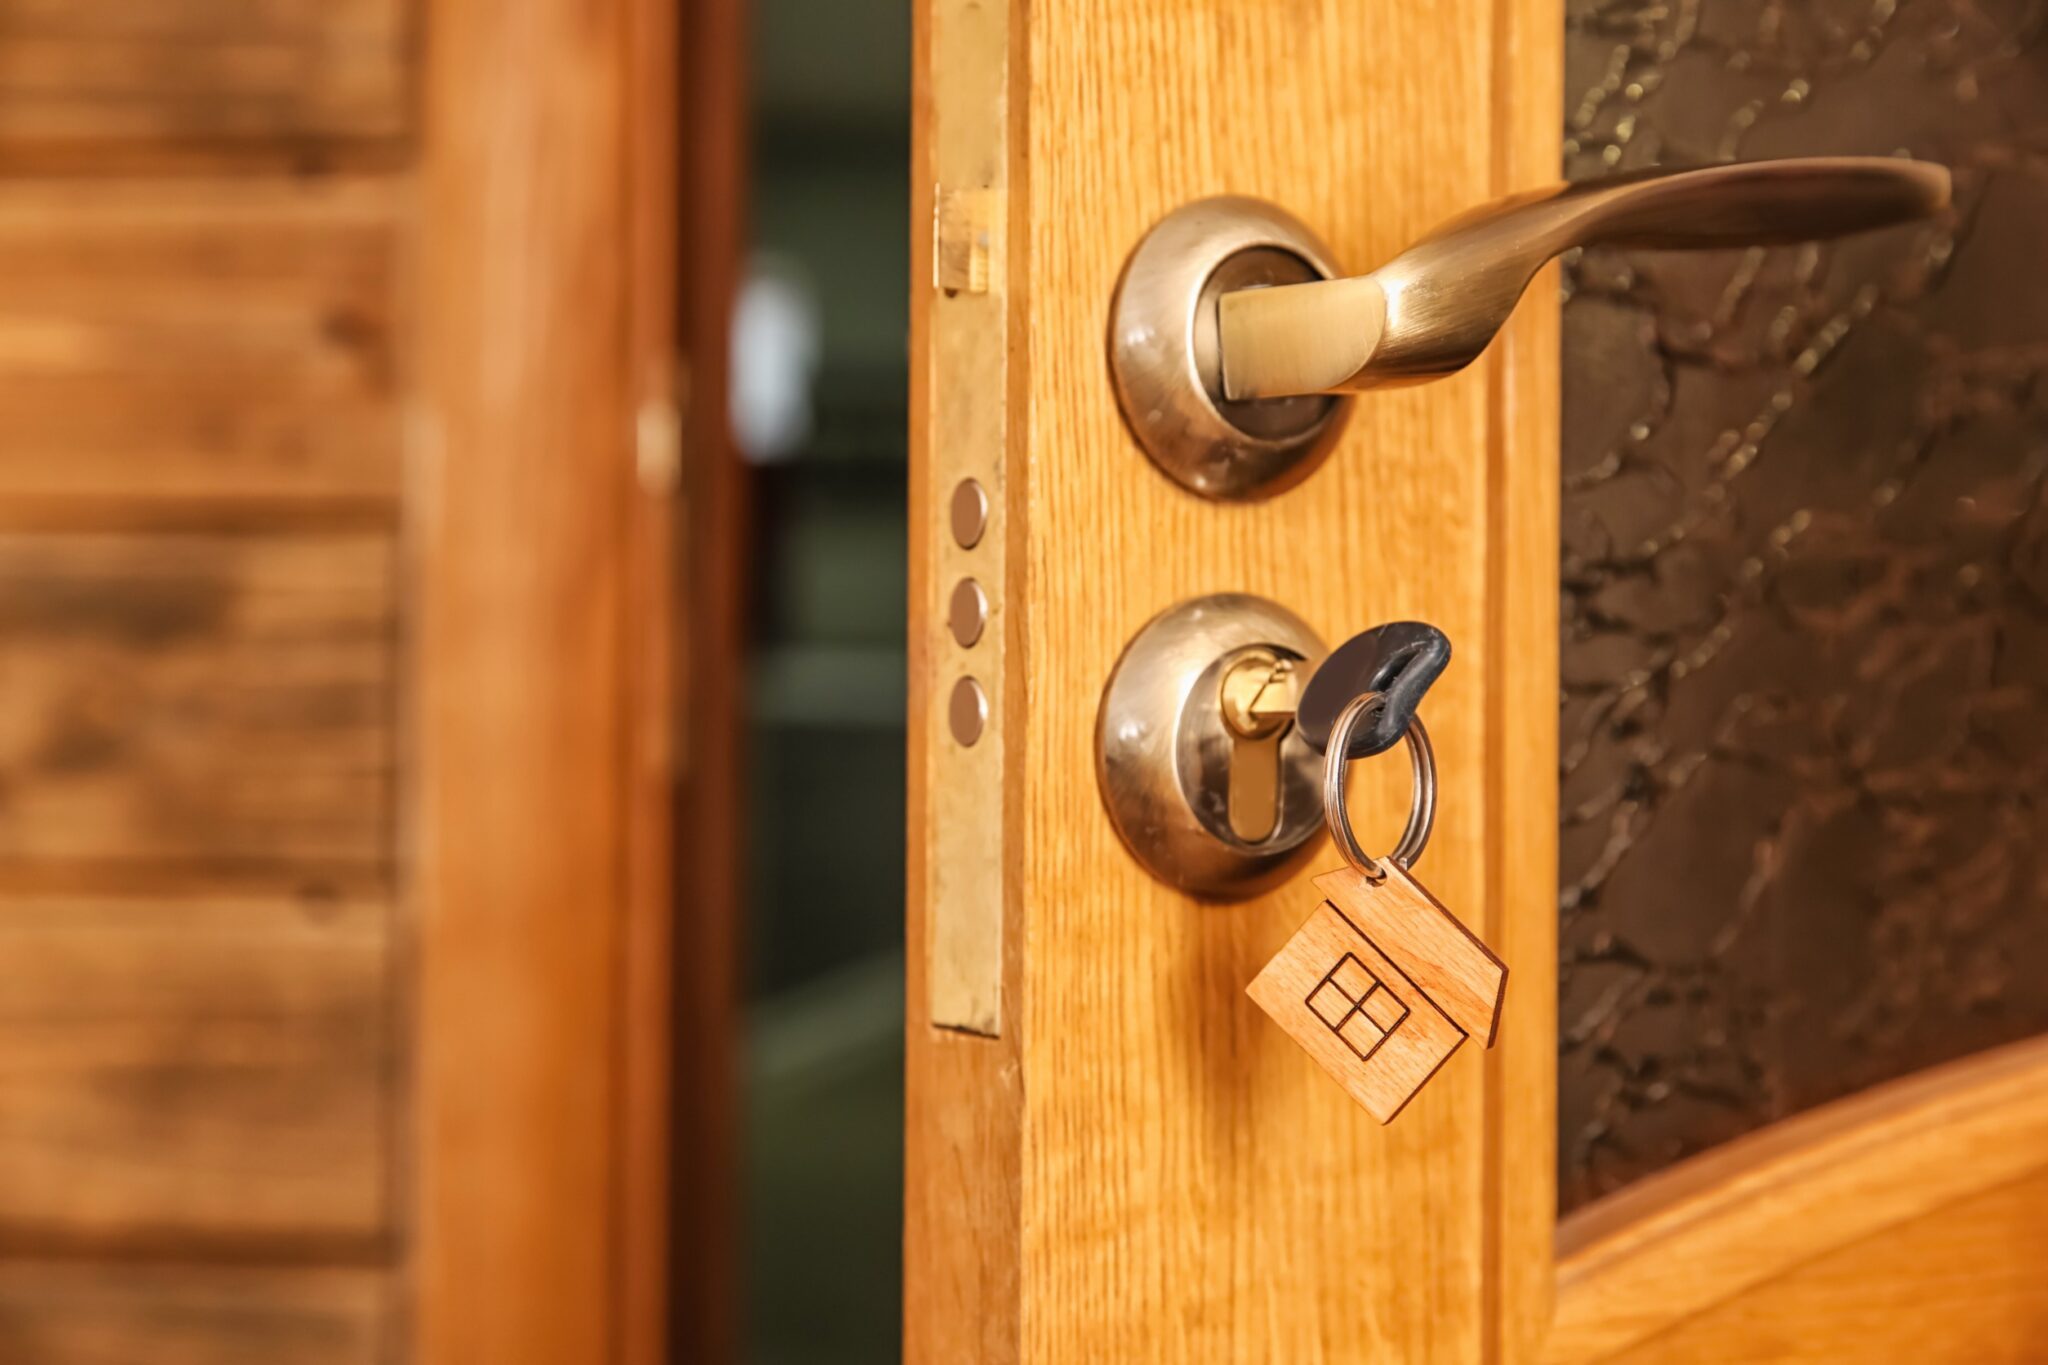 Cambriolage : mon assurance habitation m’indemnise-t-elle si j’oublie de fermer la porte à clé ?